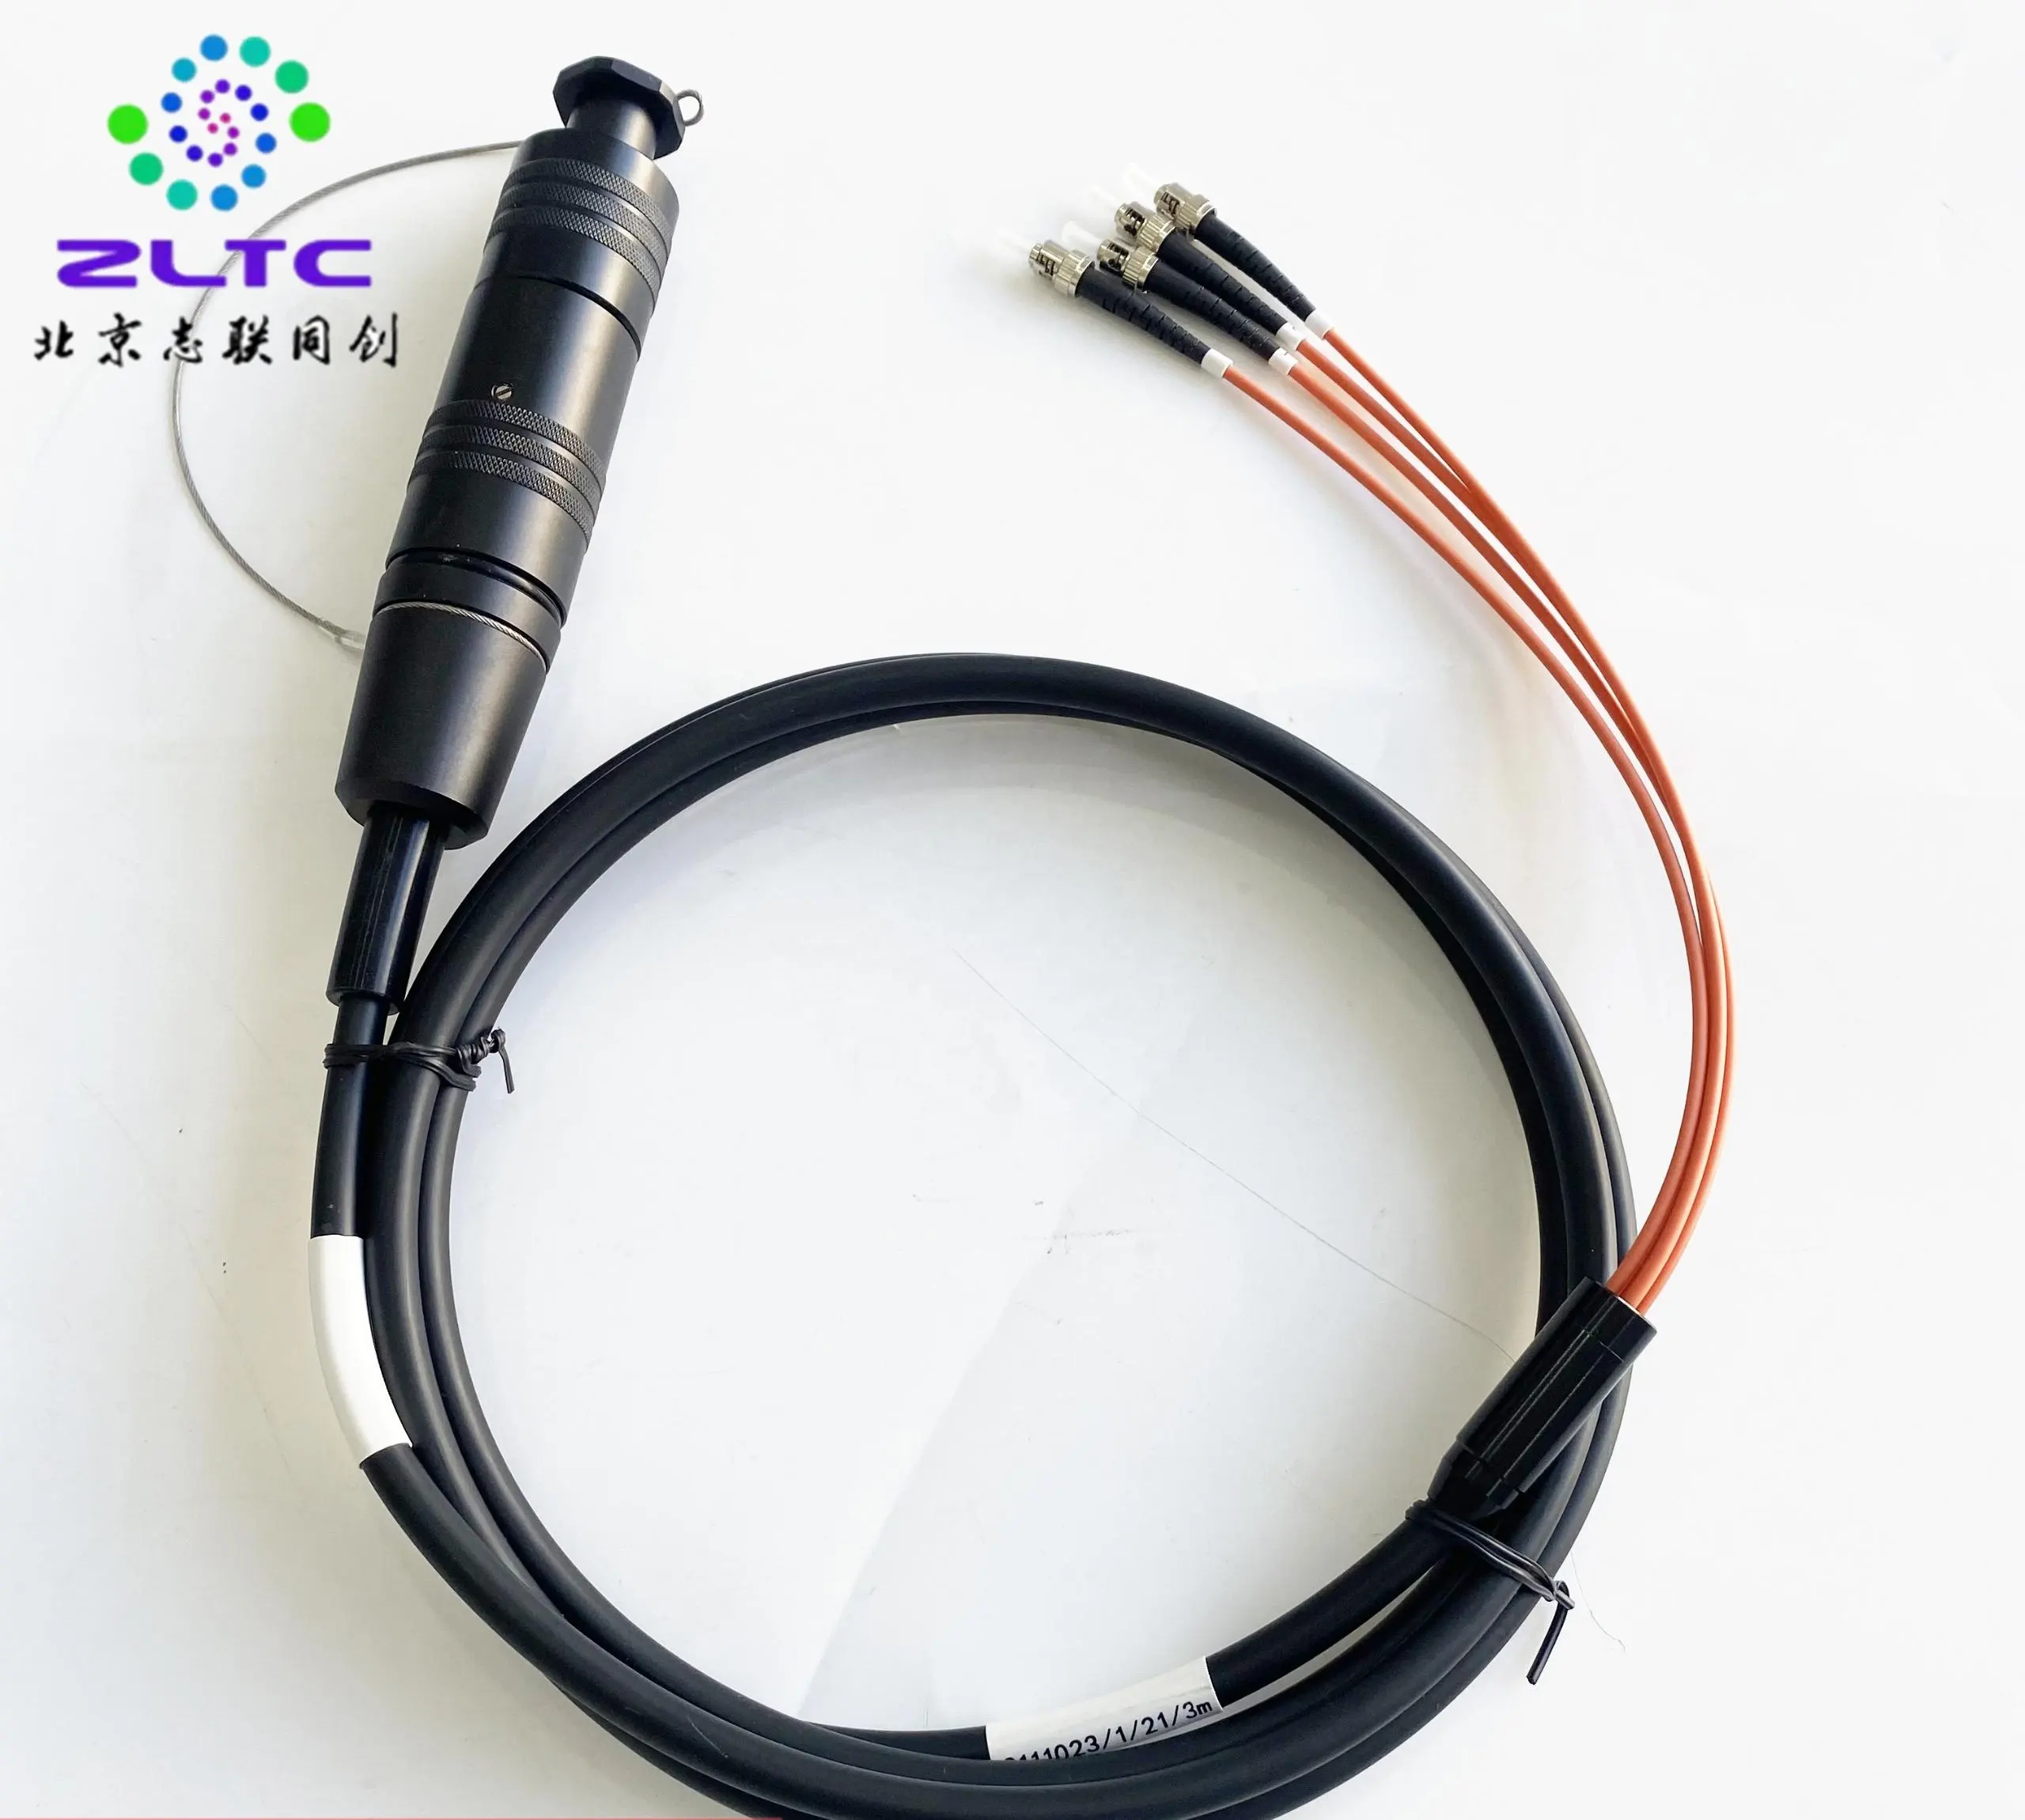 ZLTC-conectores de fibra YZG totalmente compatibles con TFOCA, restauración de emergencia y comunicación desplegable, minería y exploración